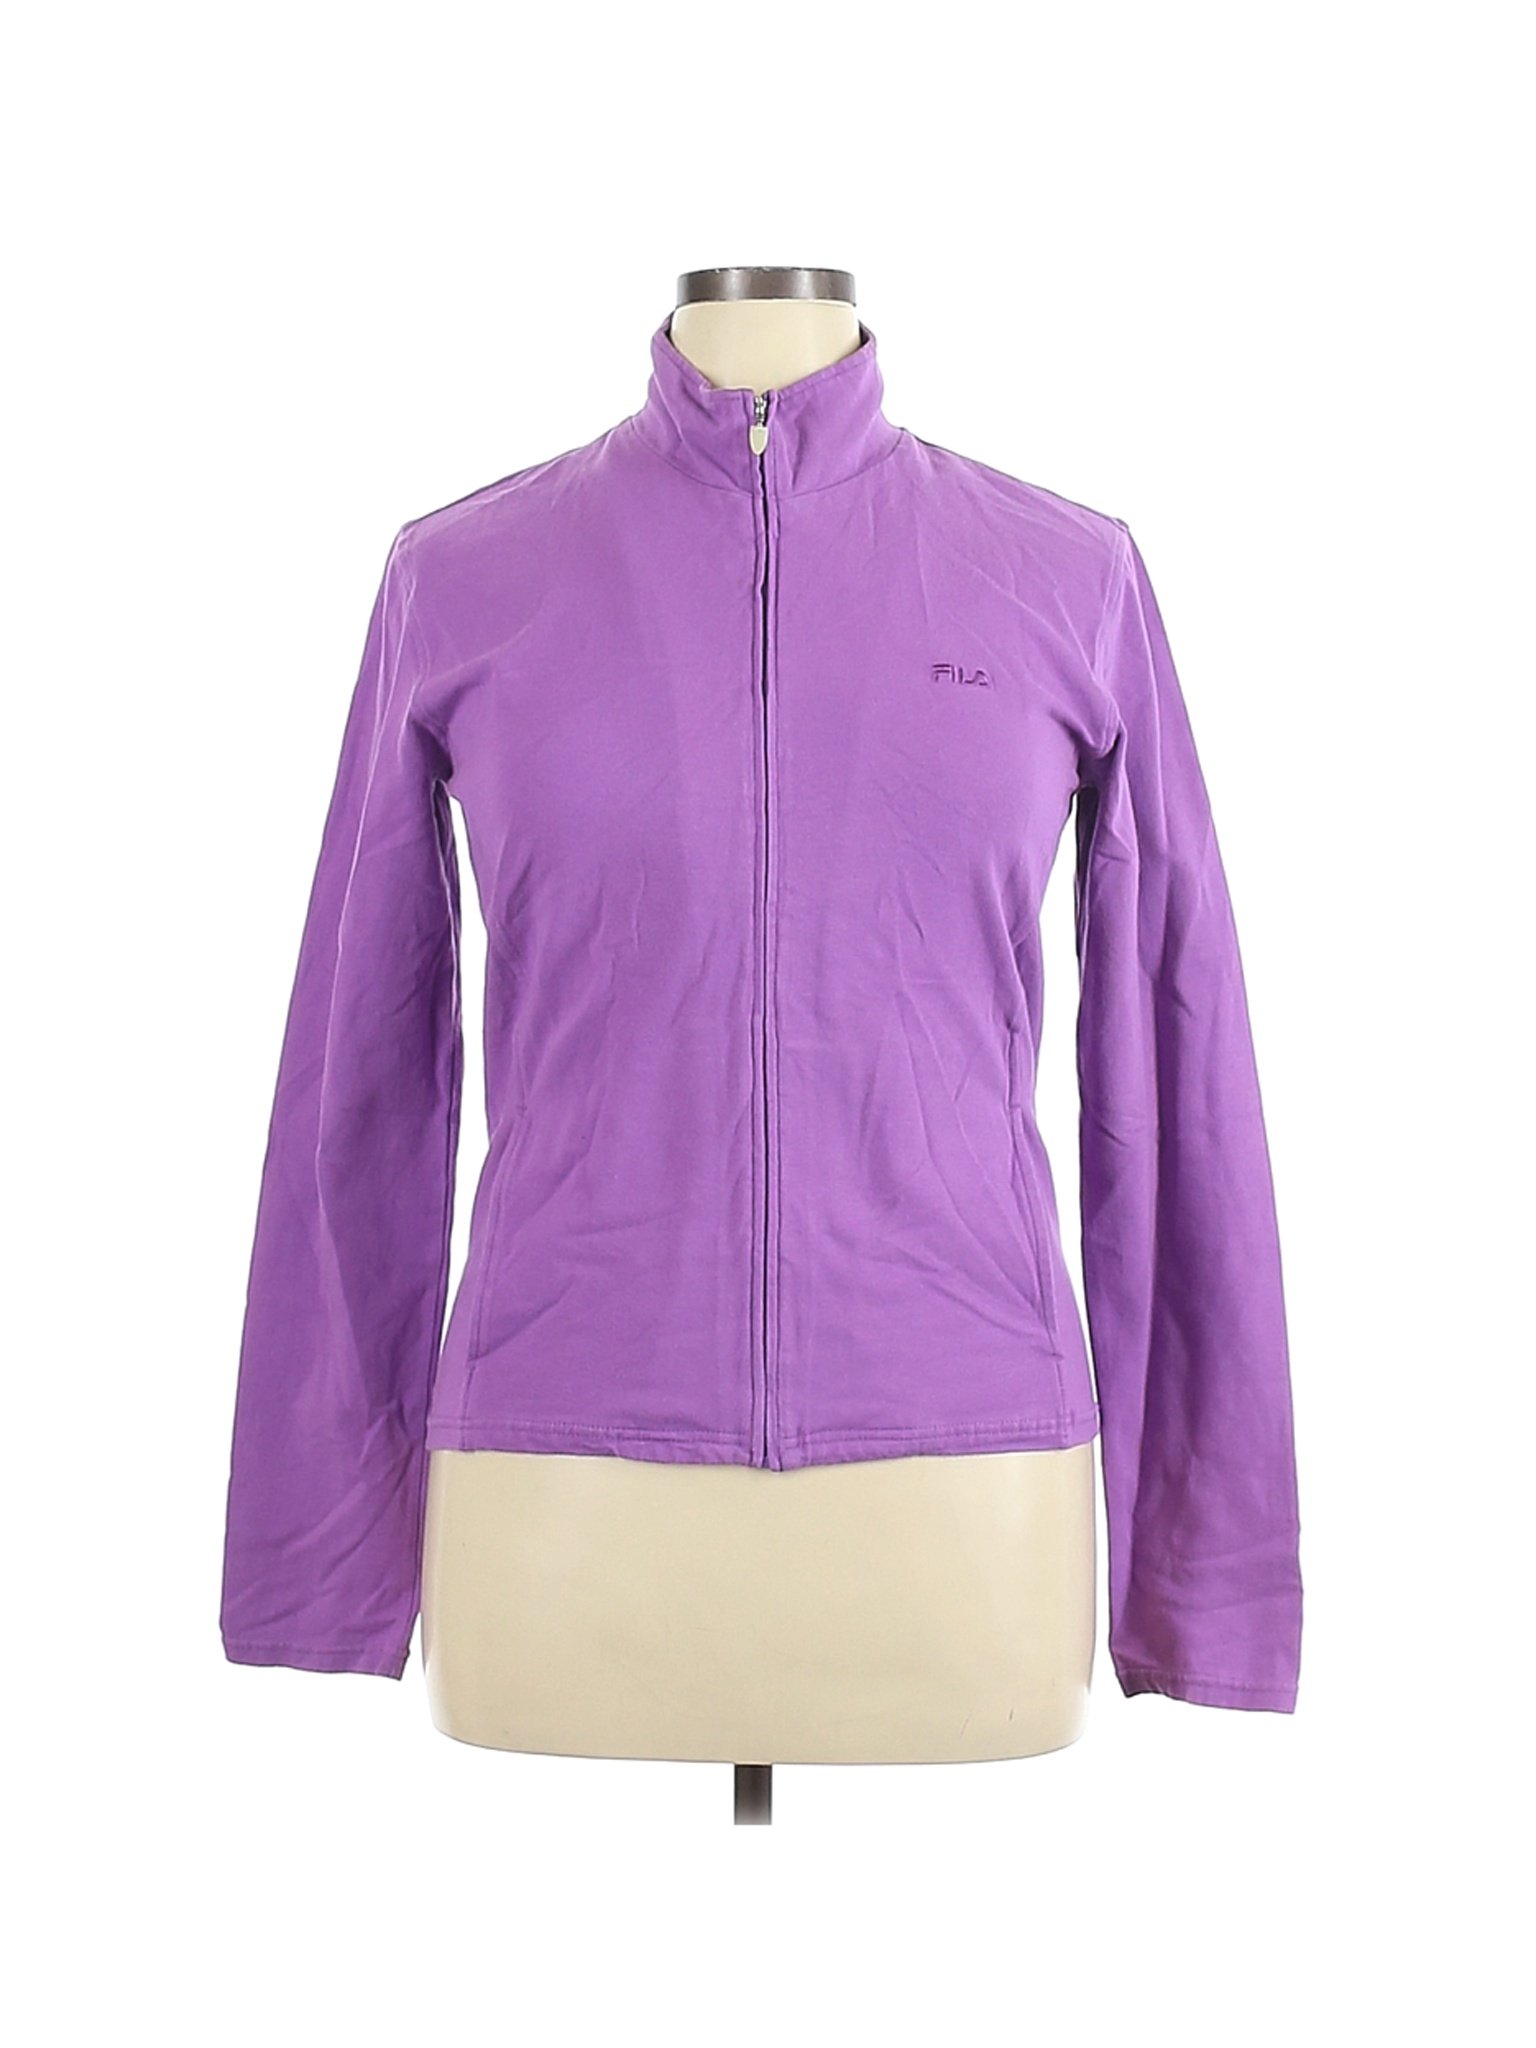 Fila Women Purple Track Jacket XL | eBay